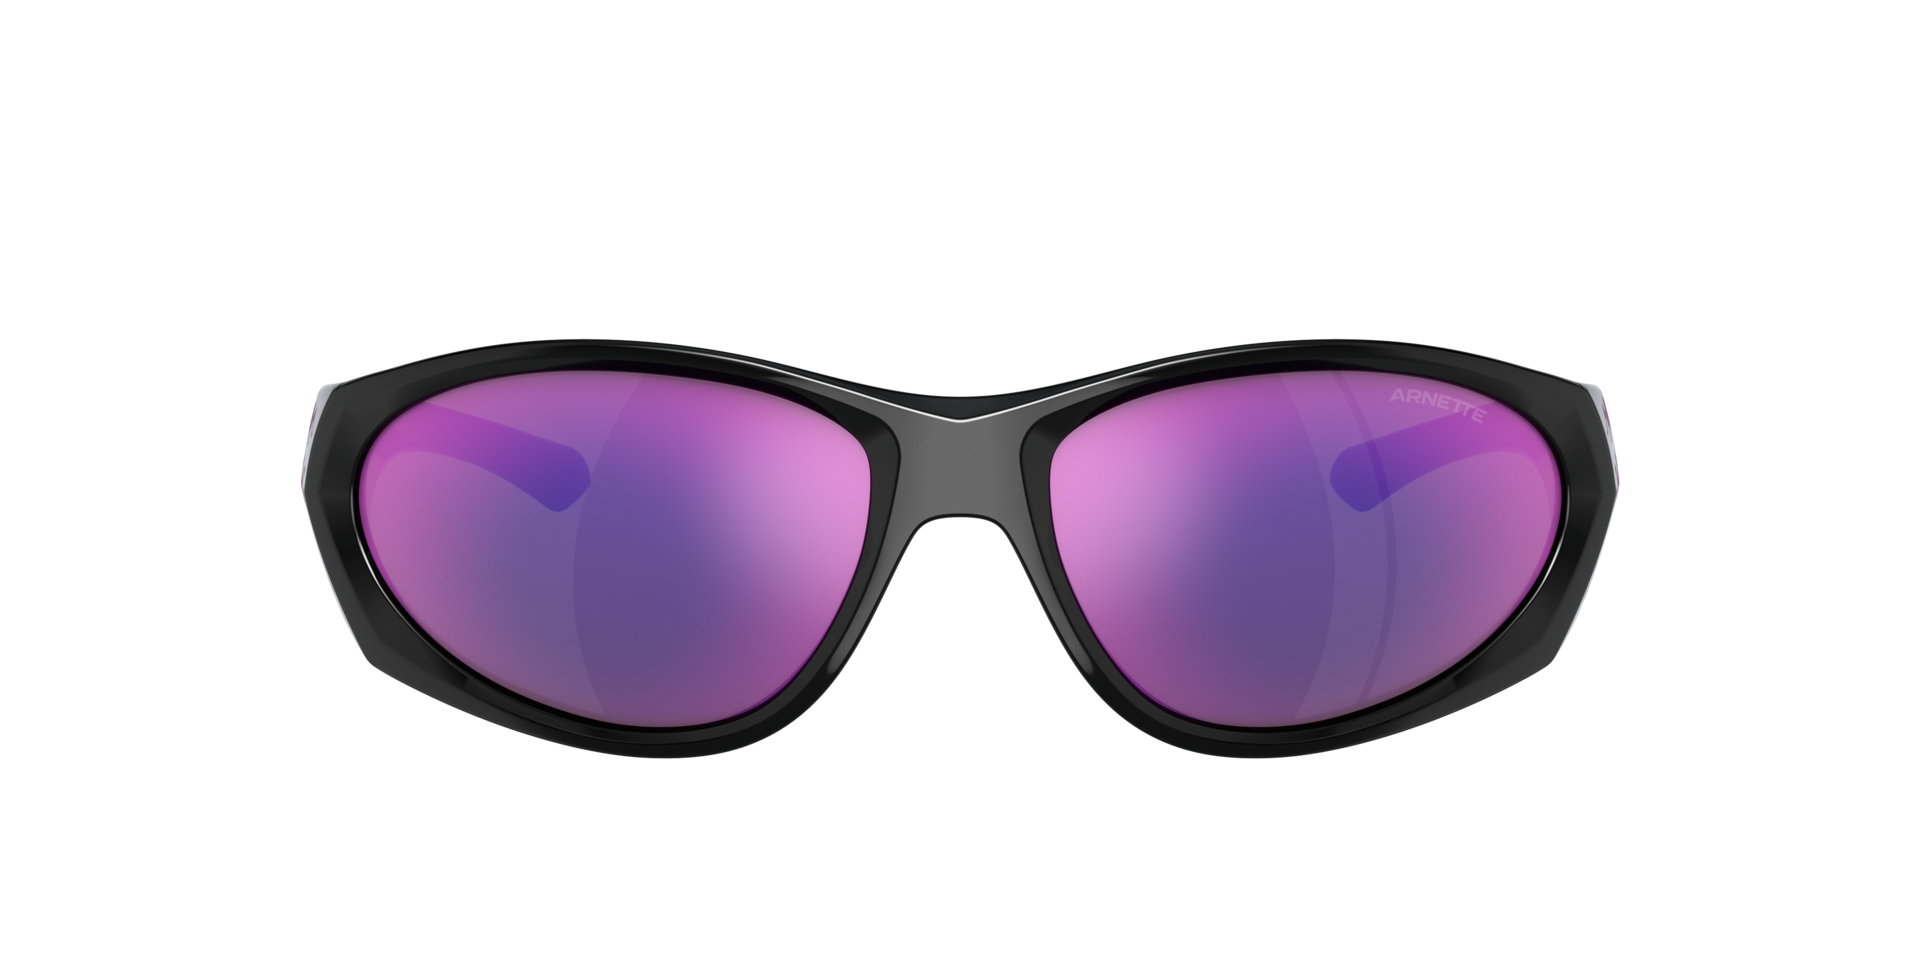 Das Bild zeigt die Sonnenbrille AN4342 29484X von der Marke Arnette in schwarz.